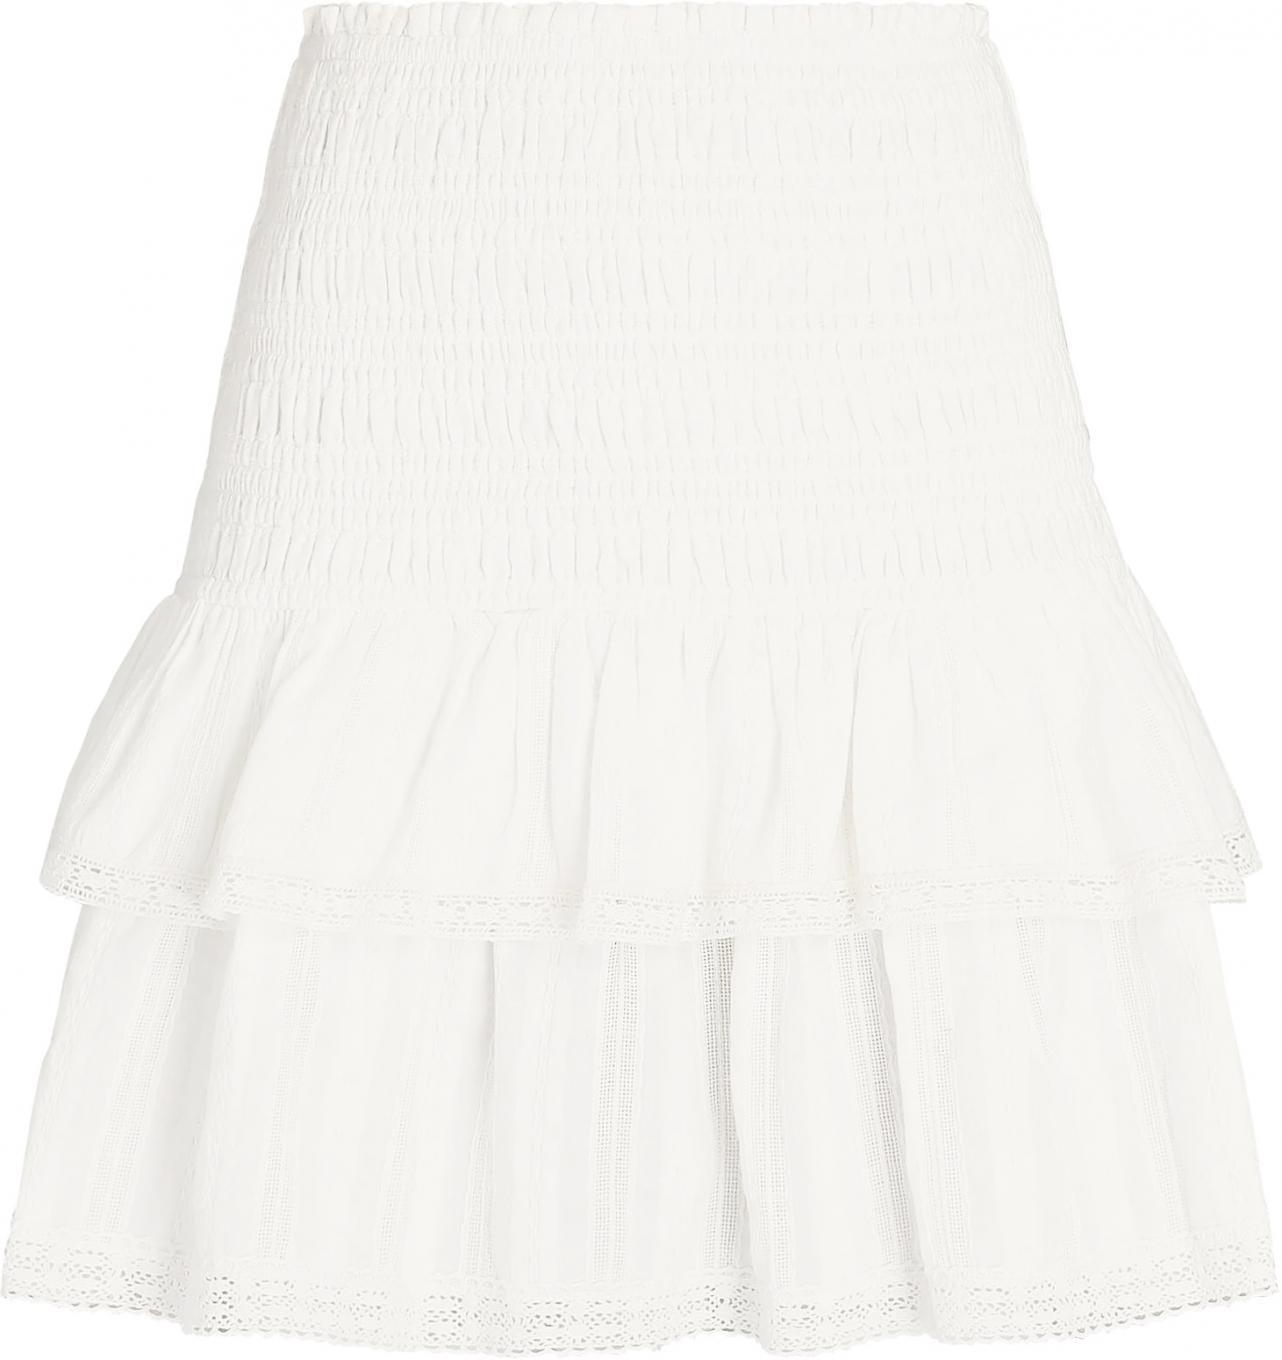 Rhonda Mini Skirt (White) - KristinDaily.org